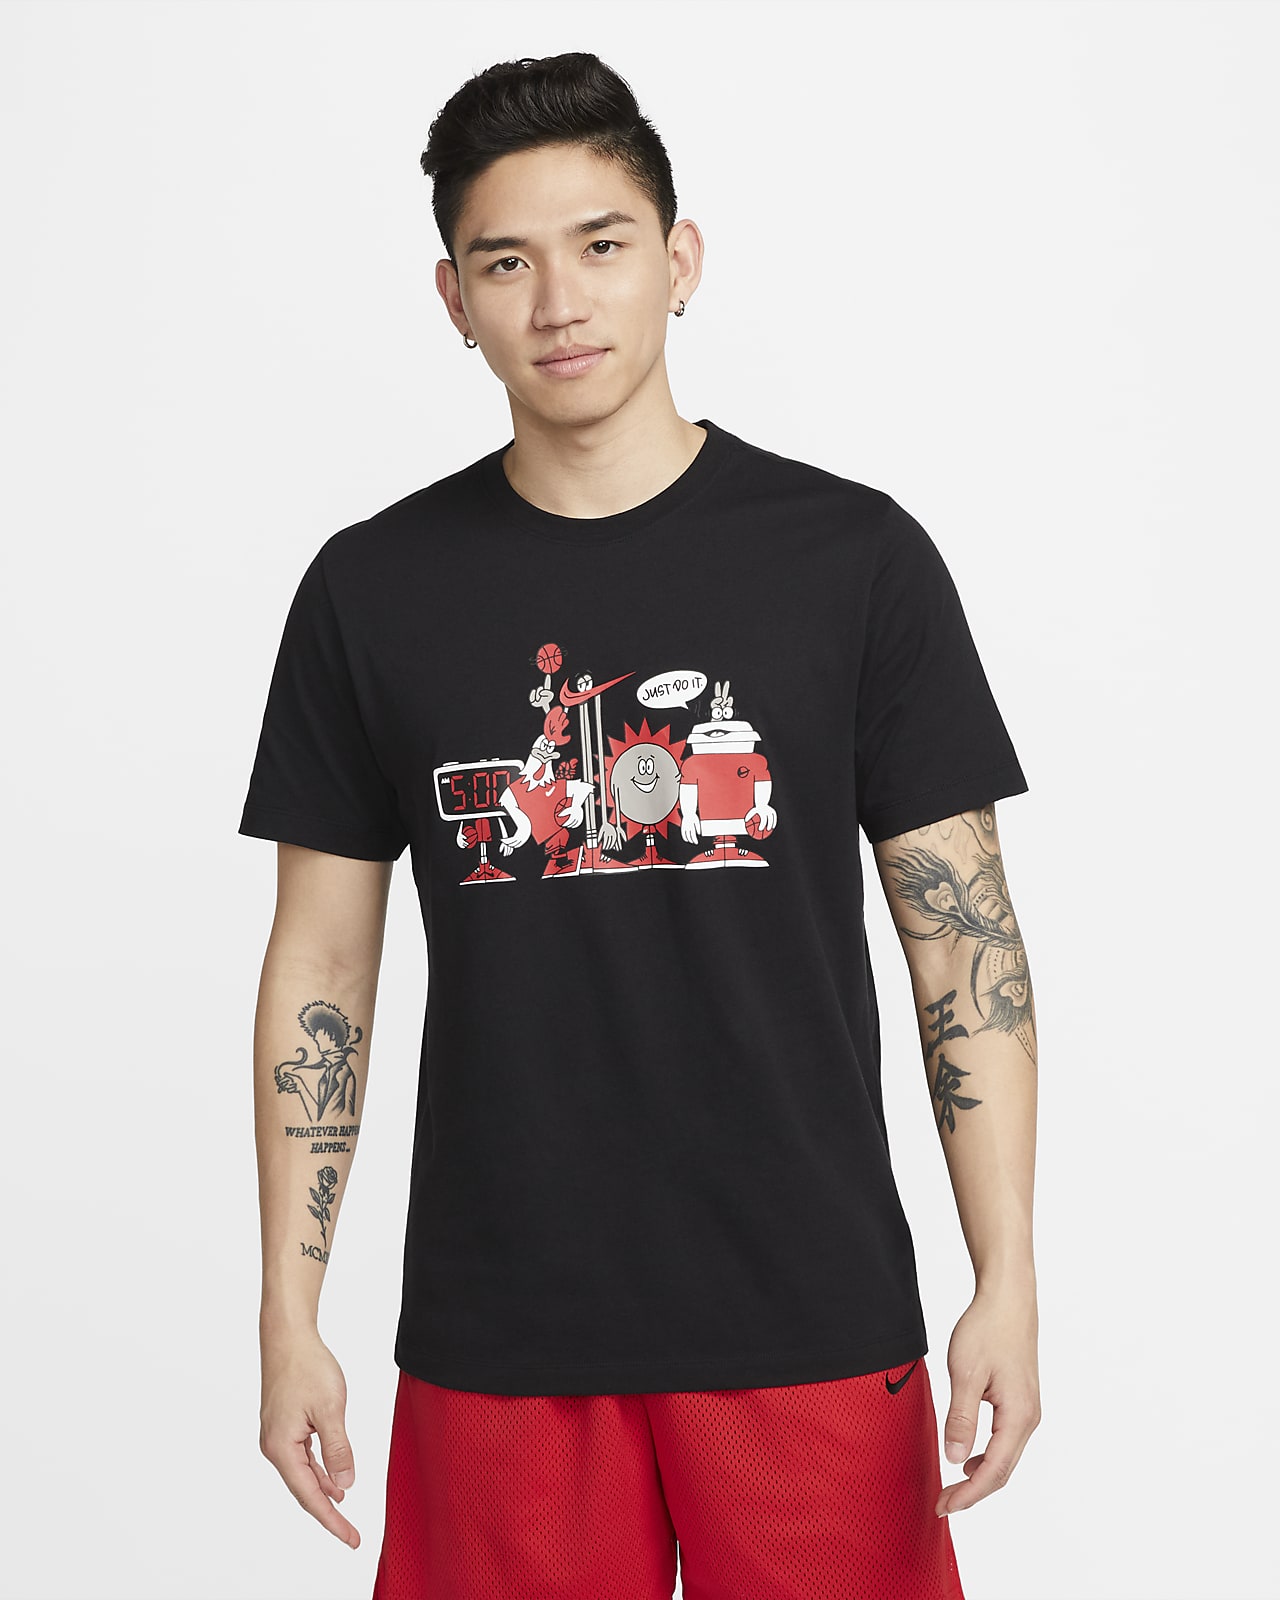 Nike 男款籃球 T 恤